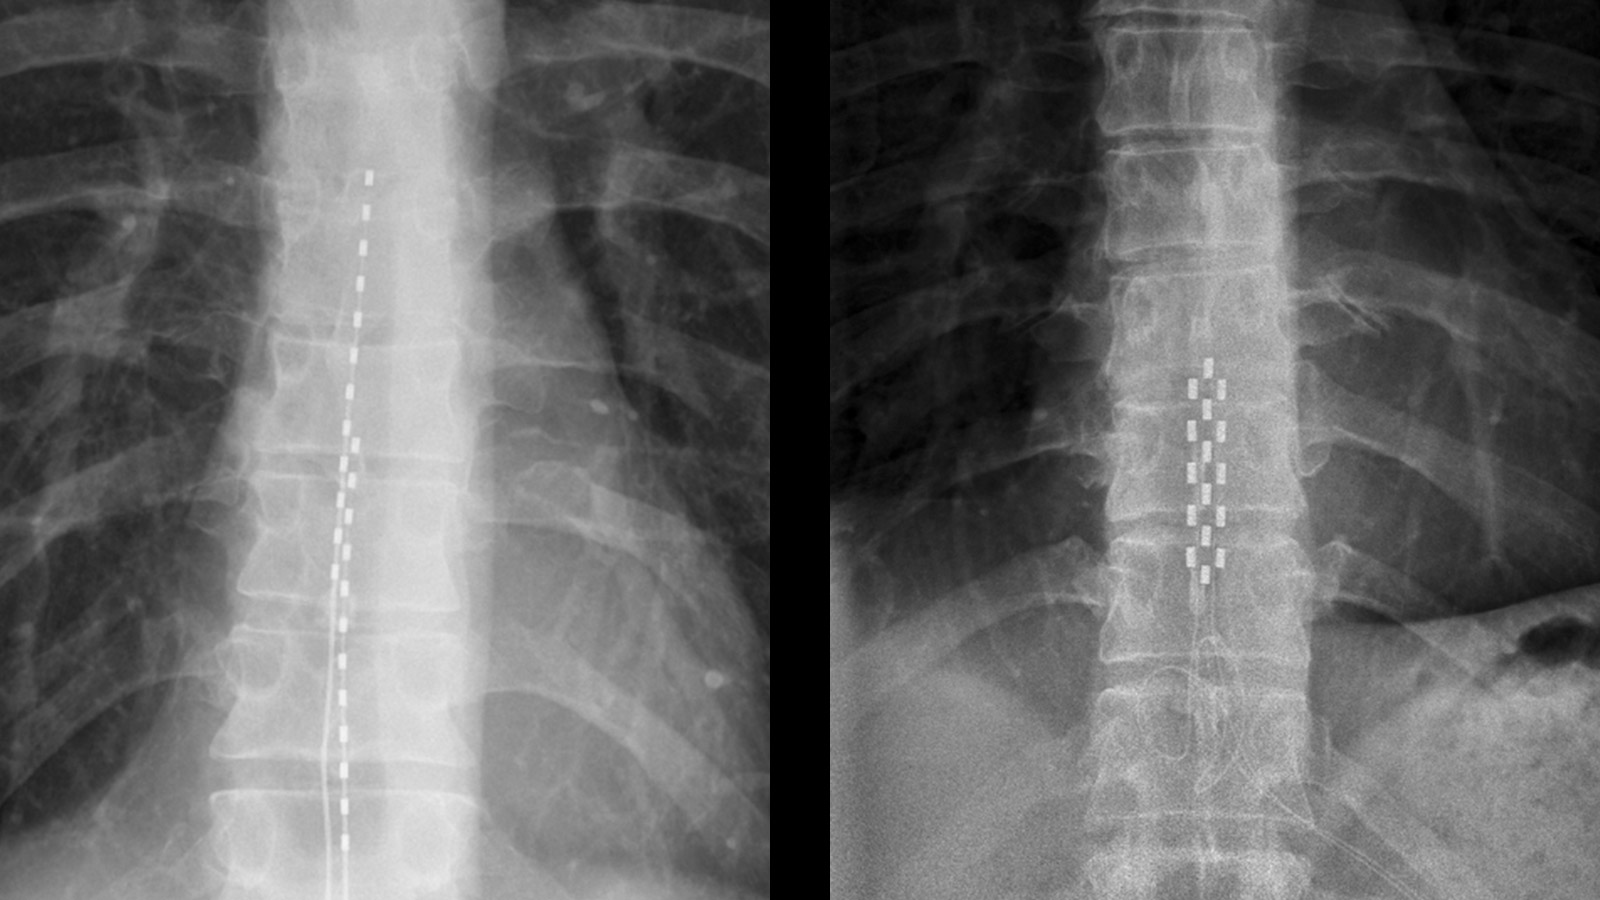 Radiographies d'une tige-électrode implantée (à gauche) et d'une plaque-électrode implantée (à droite)